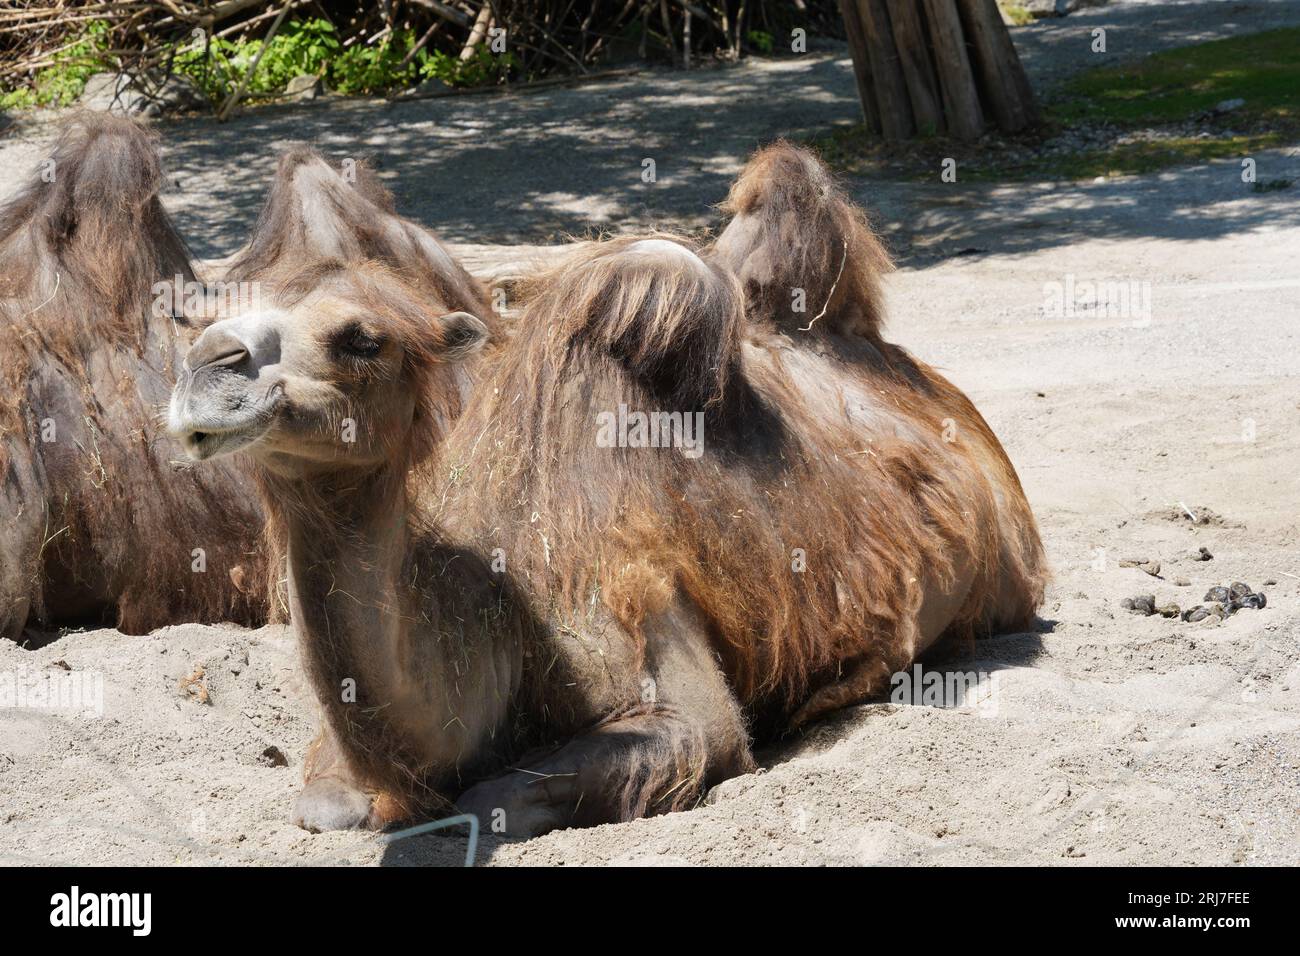 Deux chameaux de Bactriane en latin appelés Camelus bactrianus sont installés sur le sol et sont capturés en vue de côté. Banque D'Images